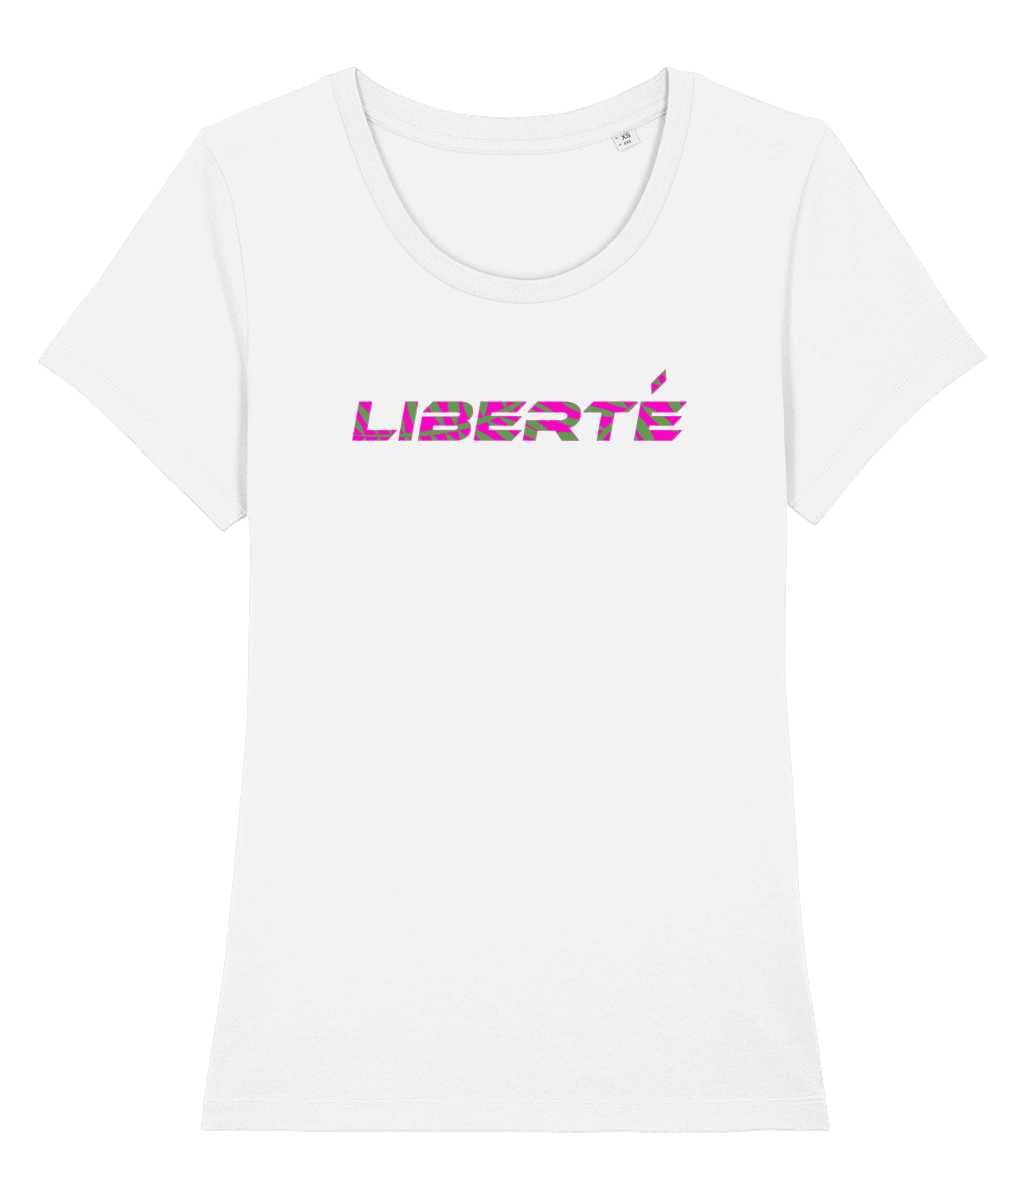 Liberté camouflage print T-shirt-Cherchez La Femme brand